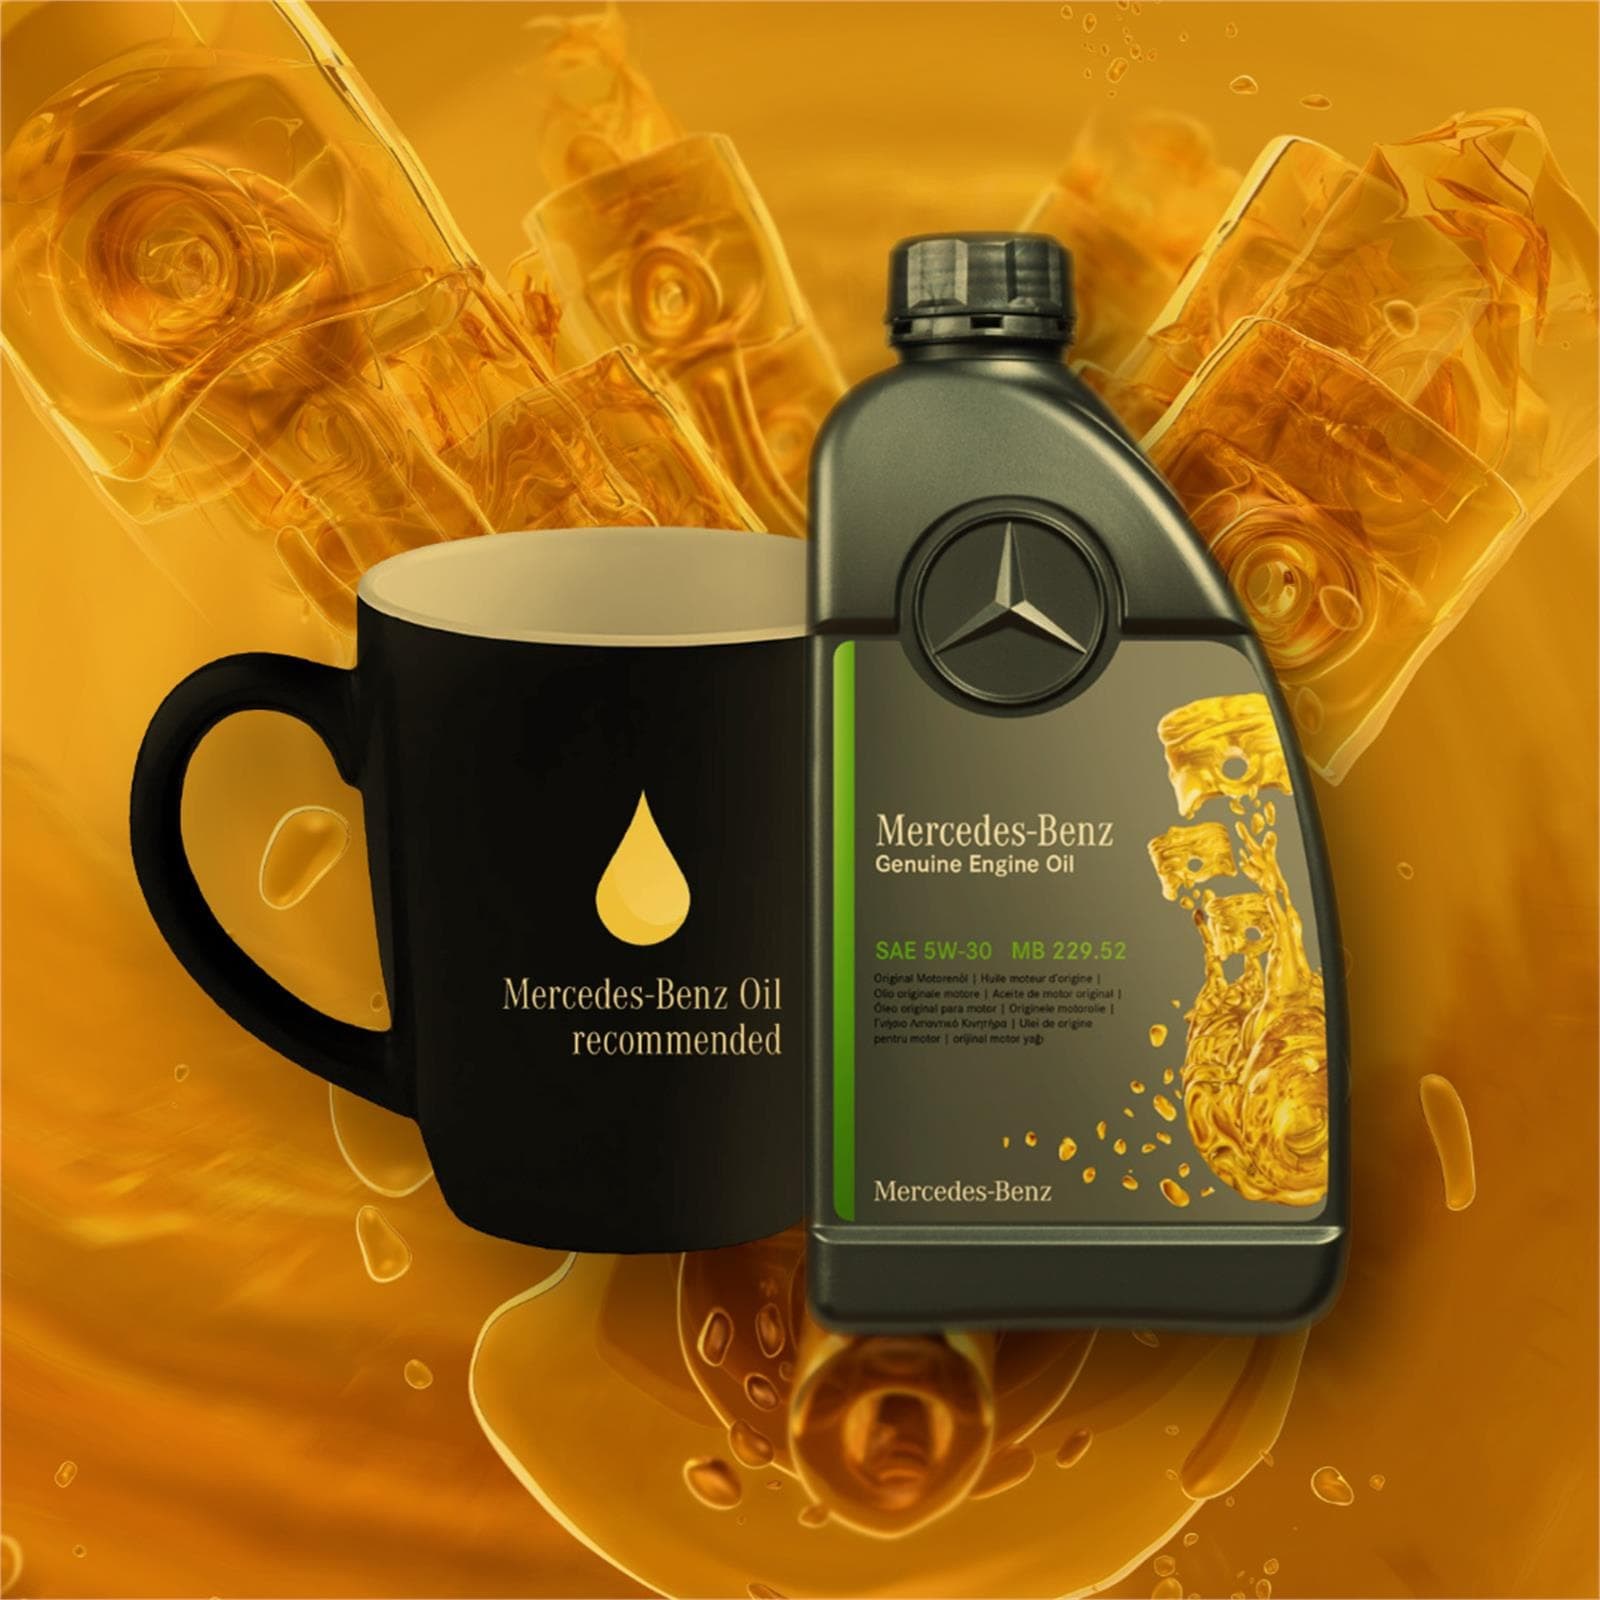 Compra tu aceite Mercedes-Benz y obtén regalo seguro - Imagen 1